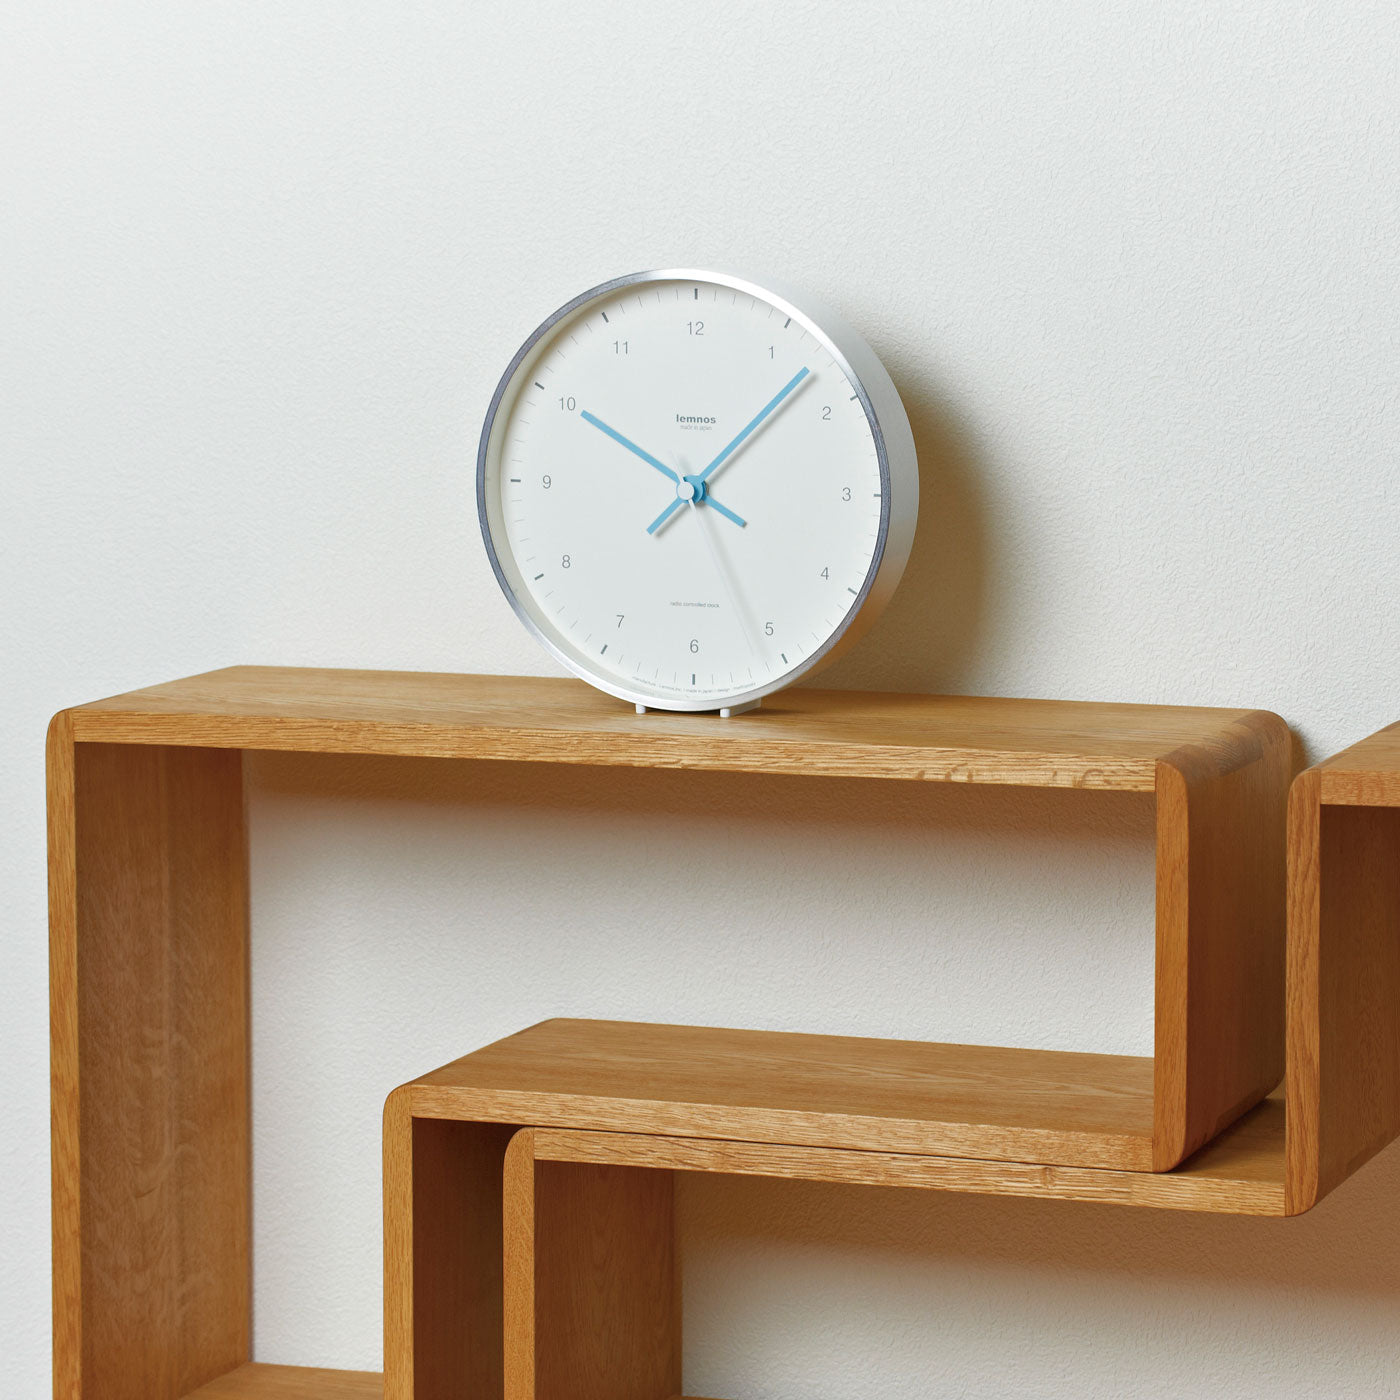 Lemnos Mizuiro Clock - White